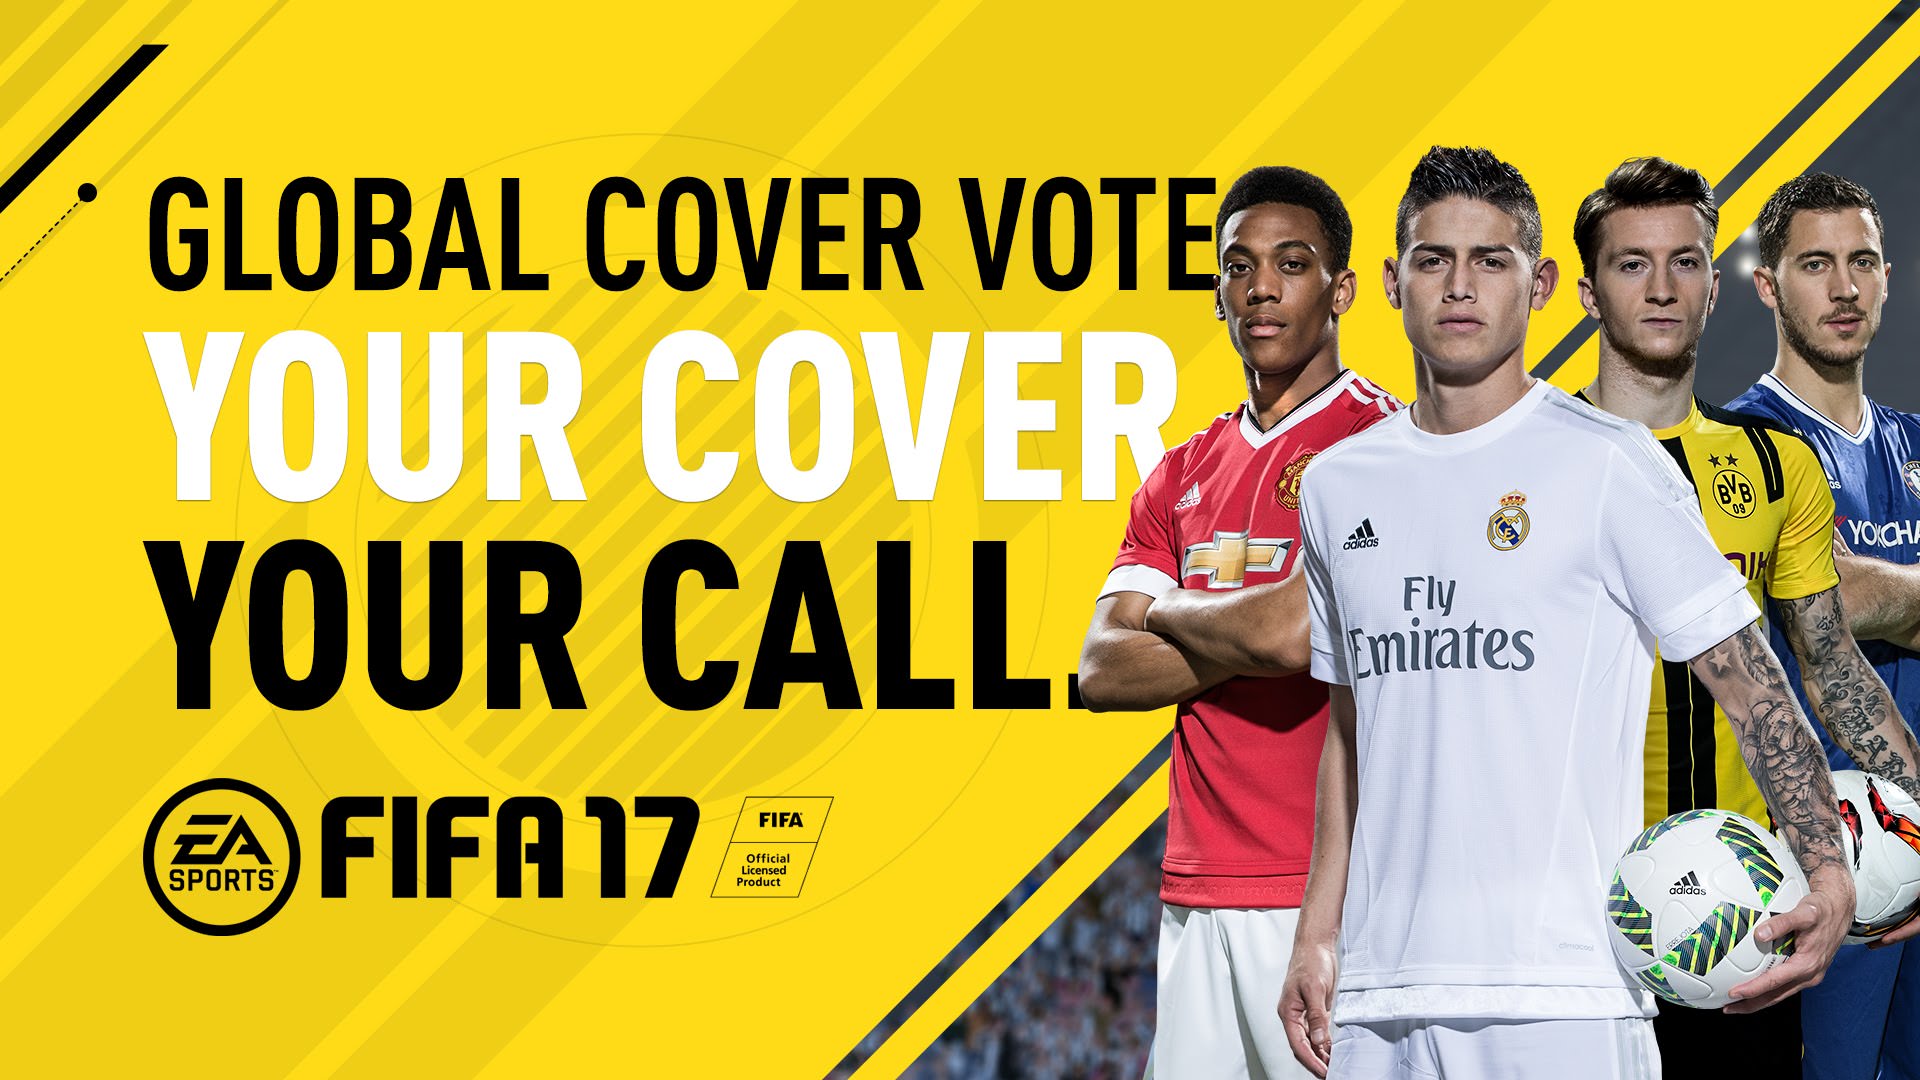 ea-sports-fifa-17-cover-vote.jpg